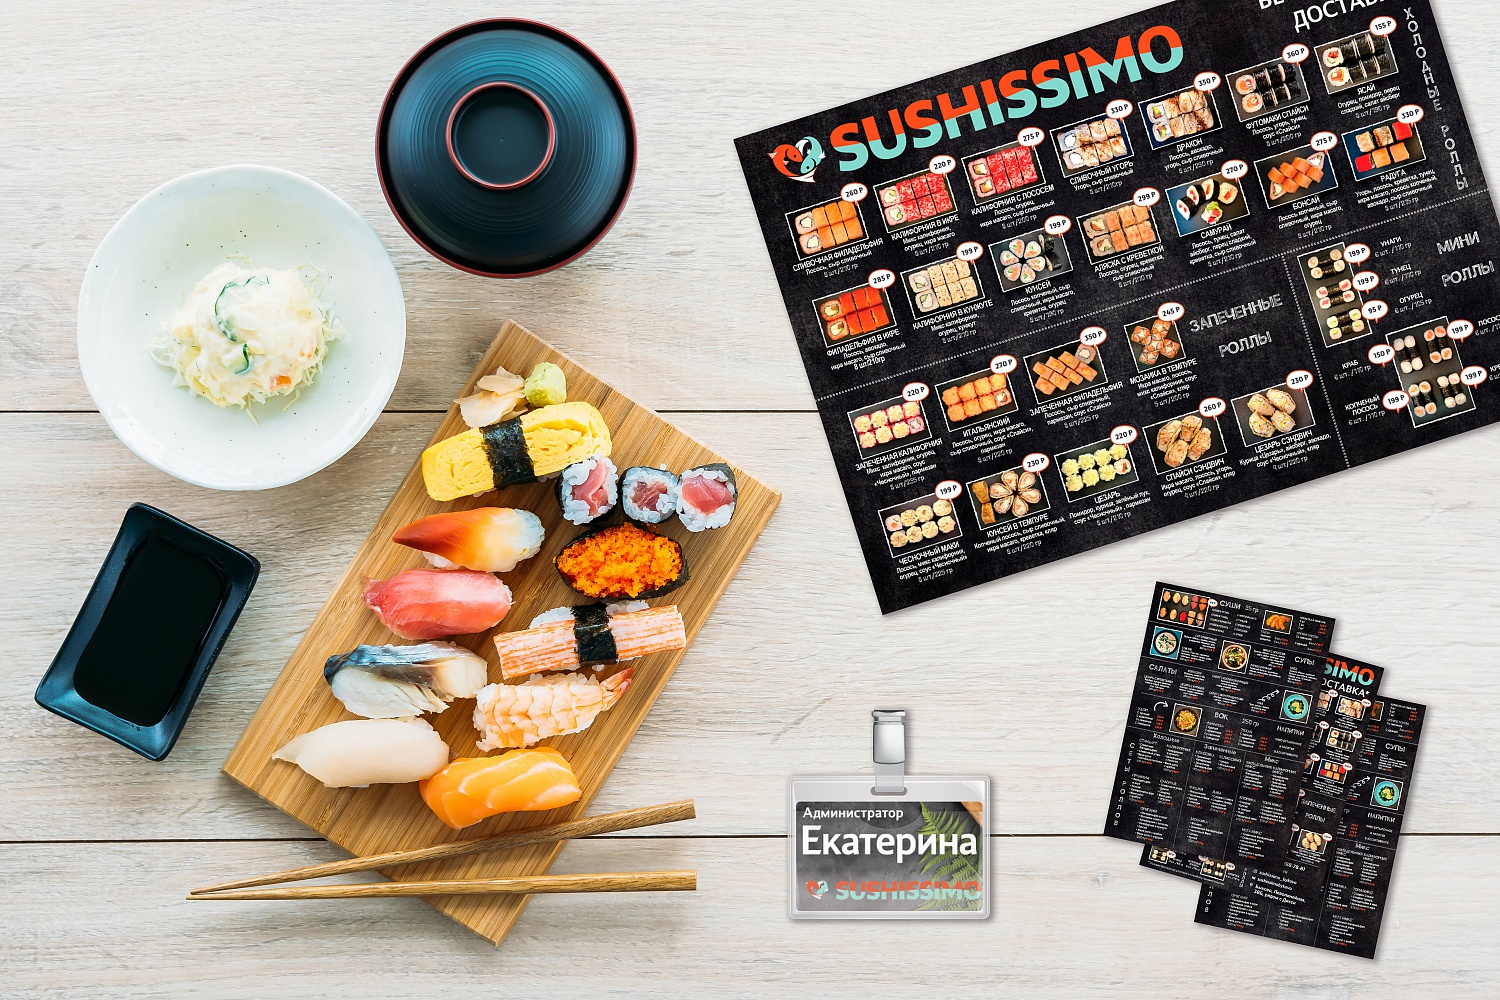 Разработка фирменного стиля и изготовление рекламы для магазина суши и роллов SUSHISSIMO